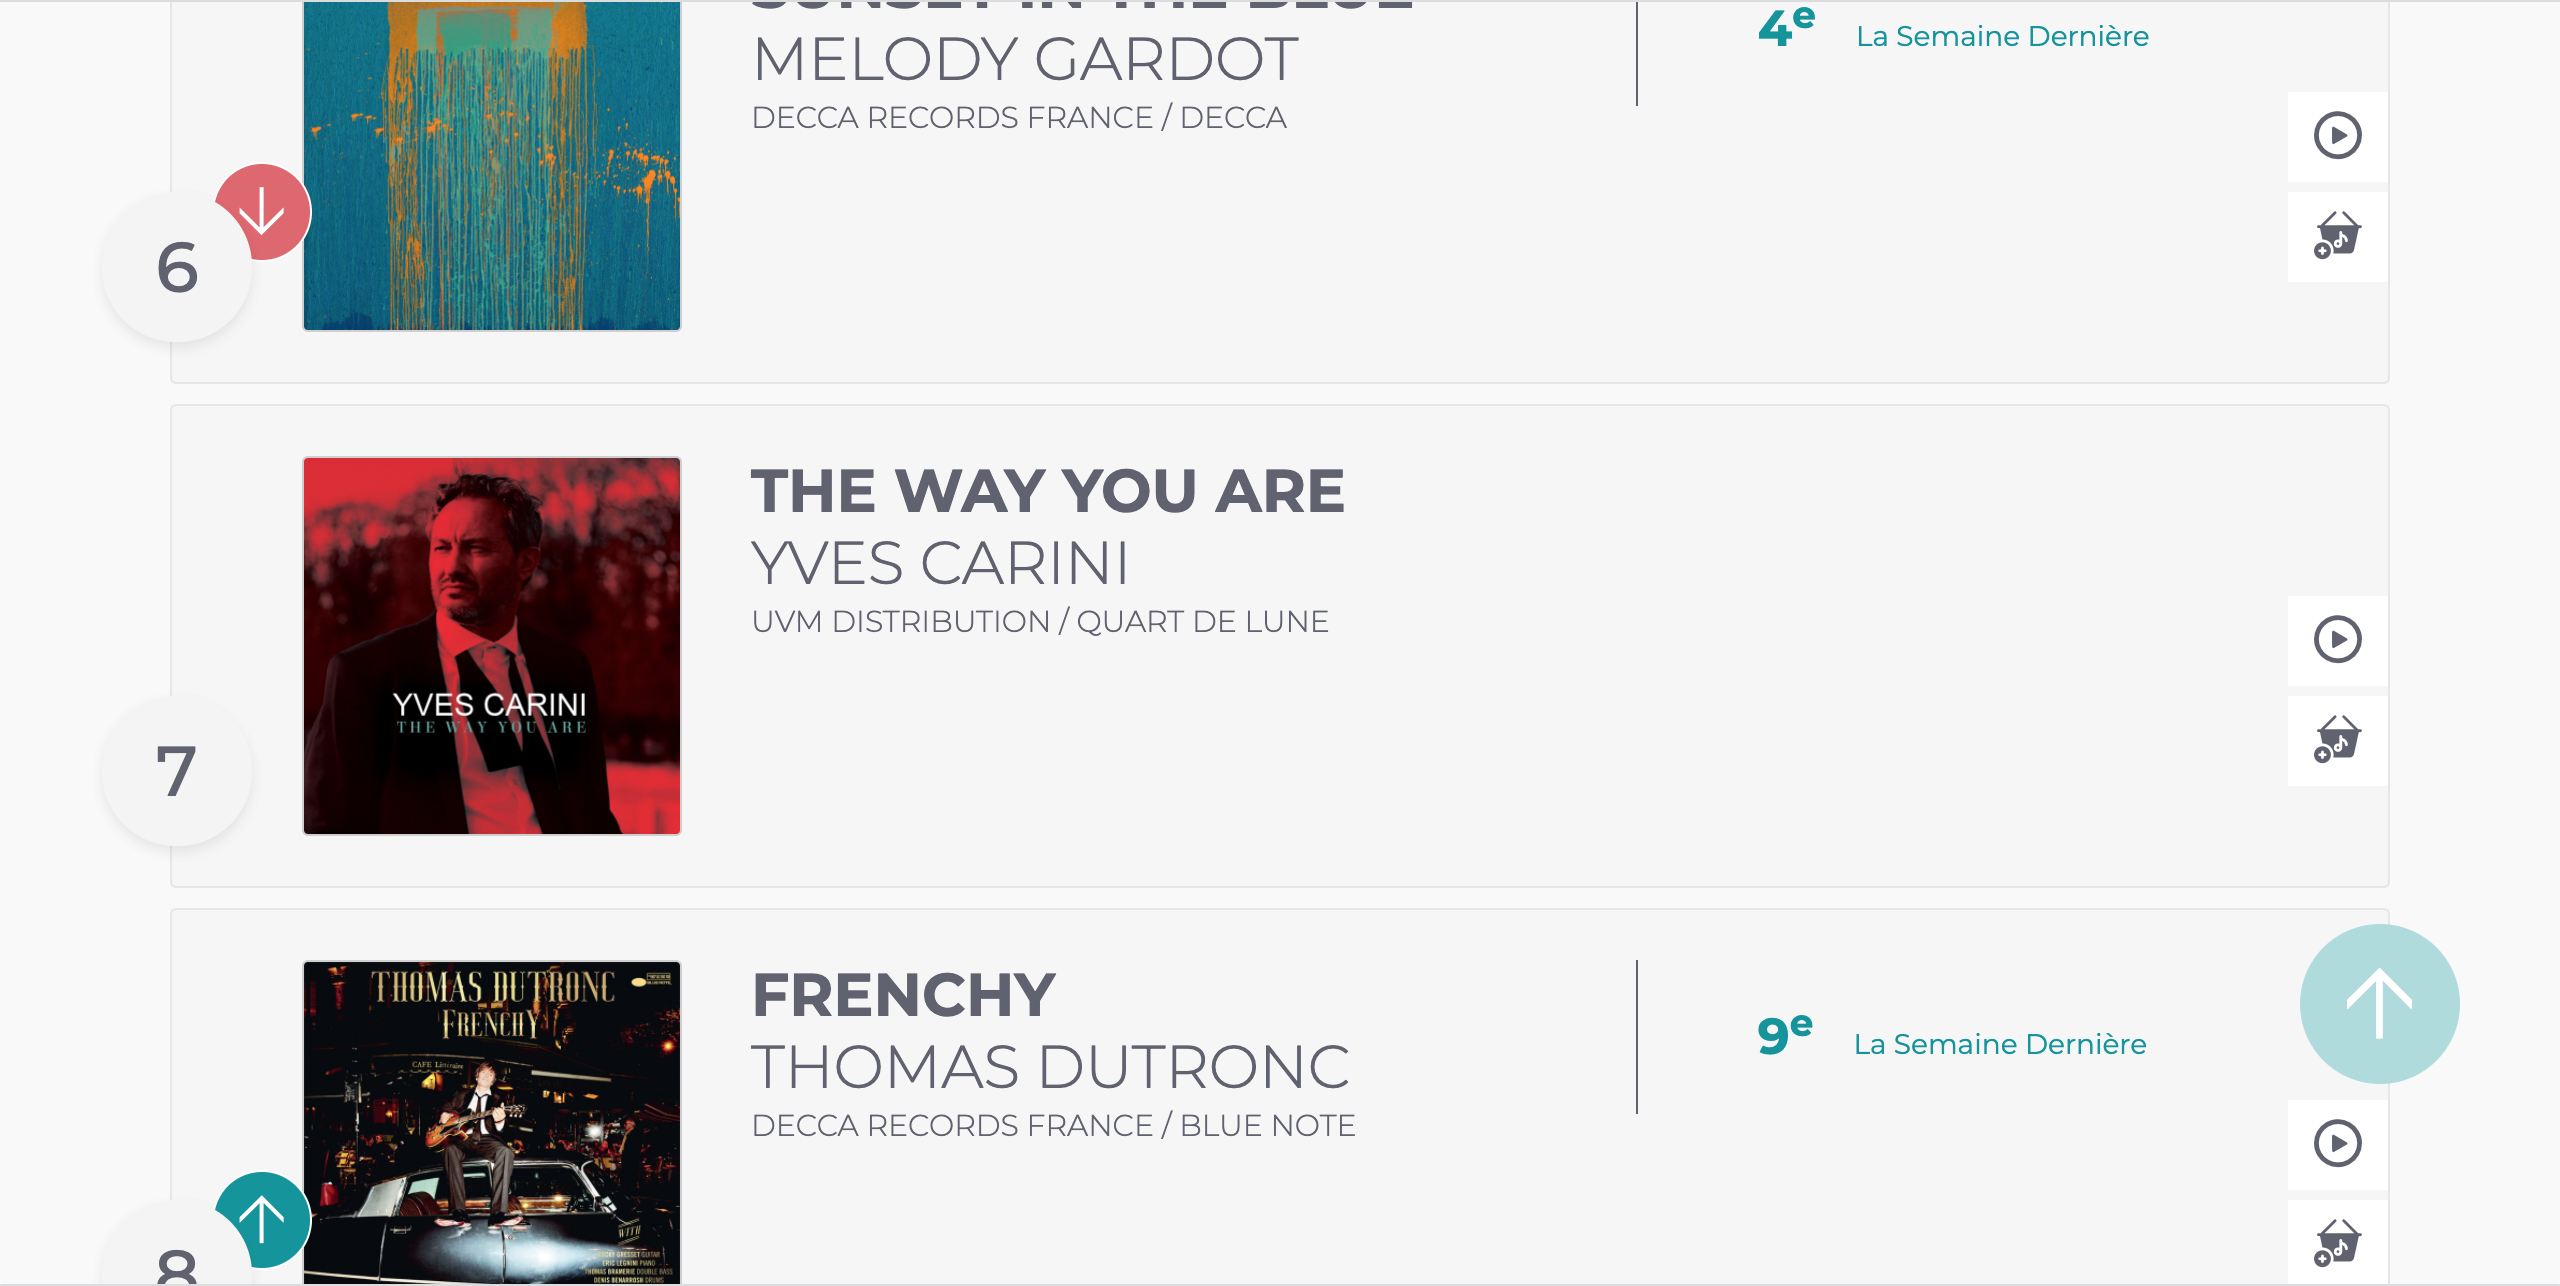 Yves Carini entre directement 7ème meilleure vente d’album Jazz en France